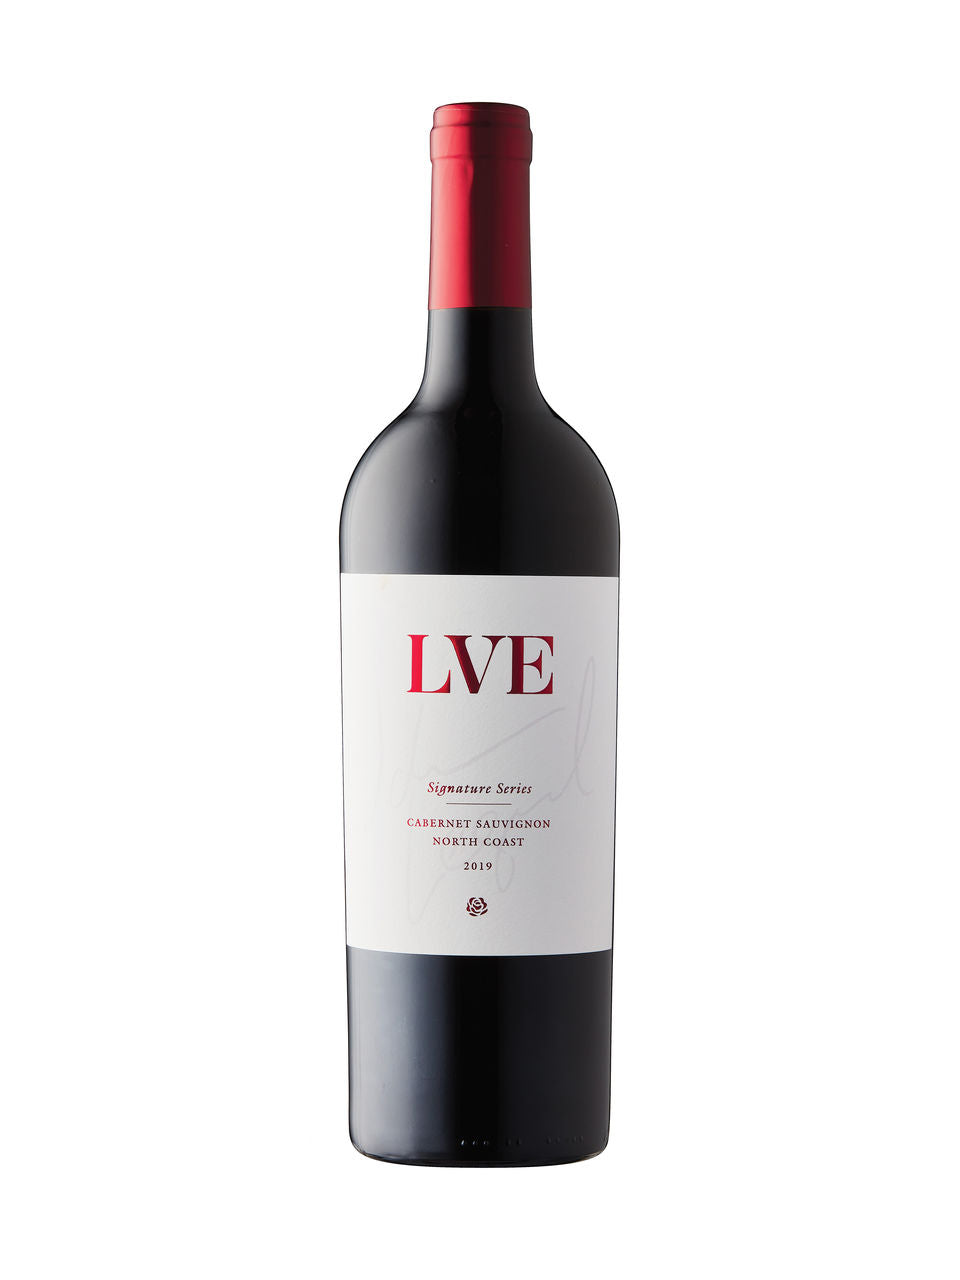 LVE John Legend Signature Series Cabernet Sauvignon 2019 750 ml bottle VINTAGES